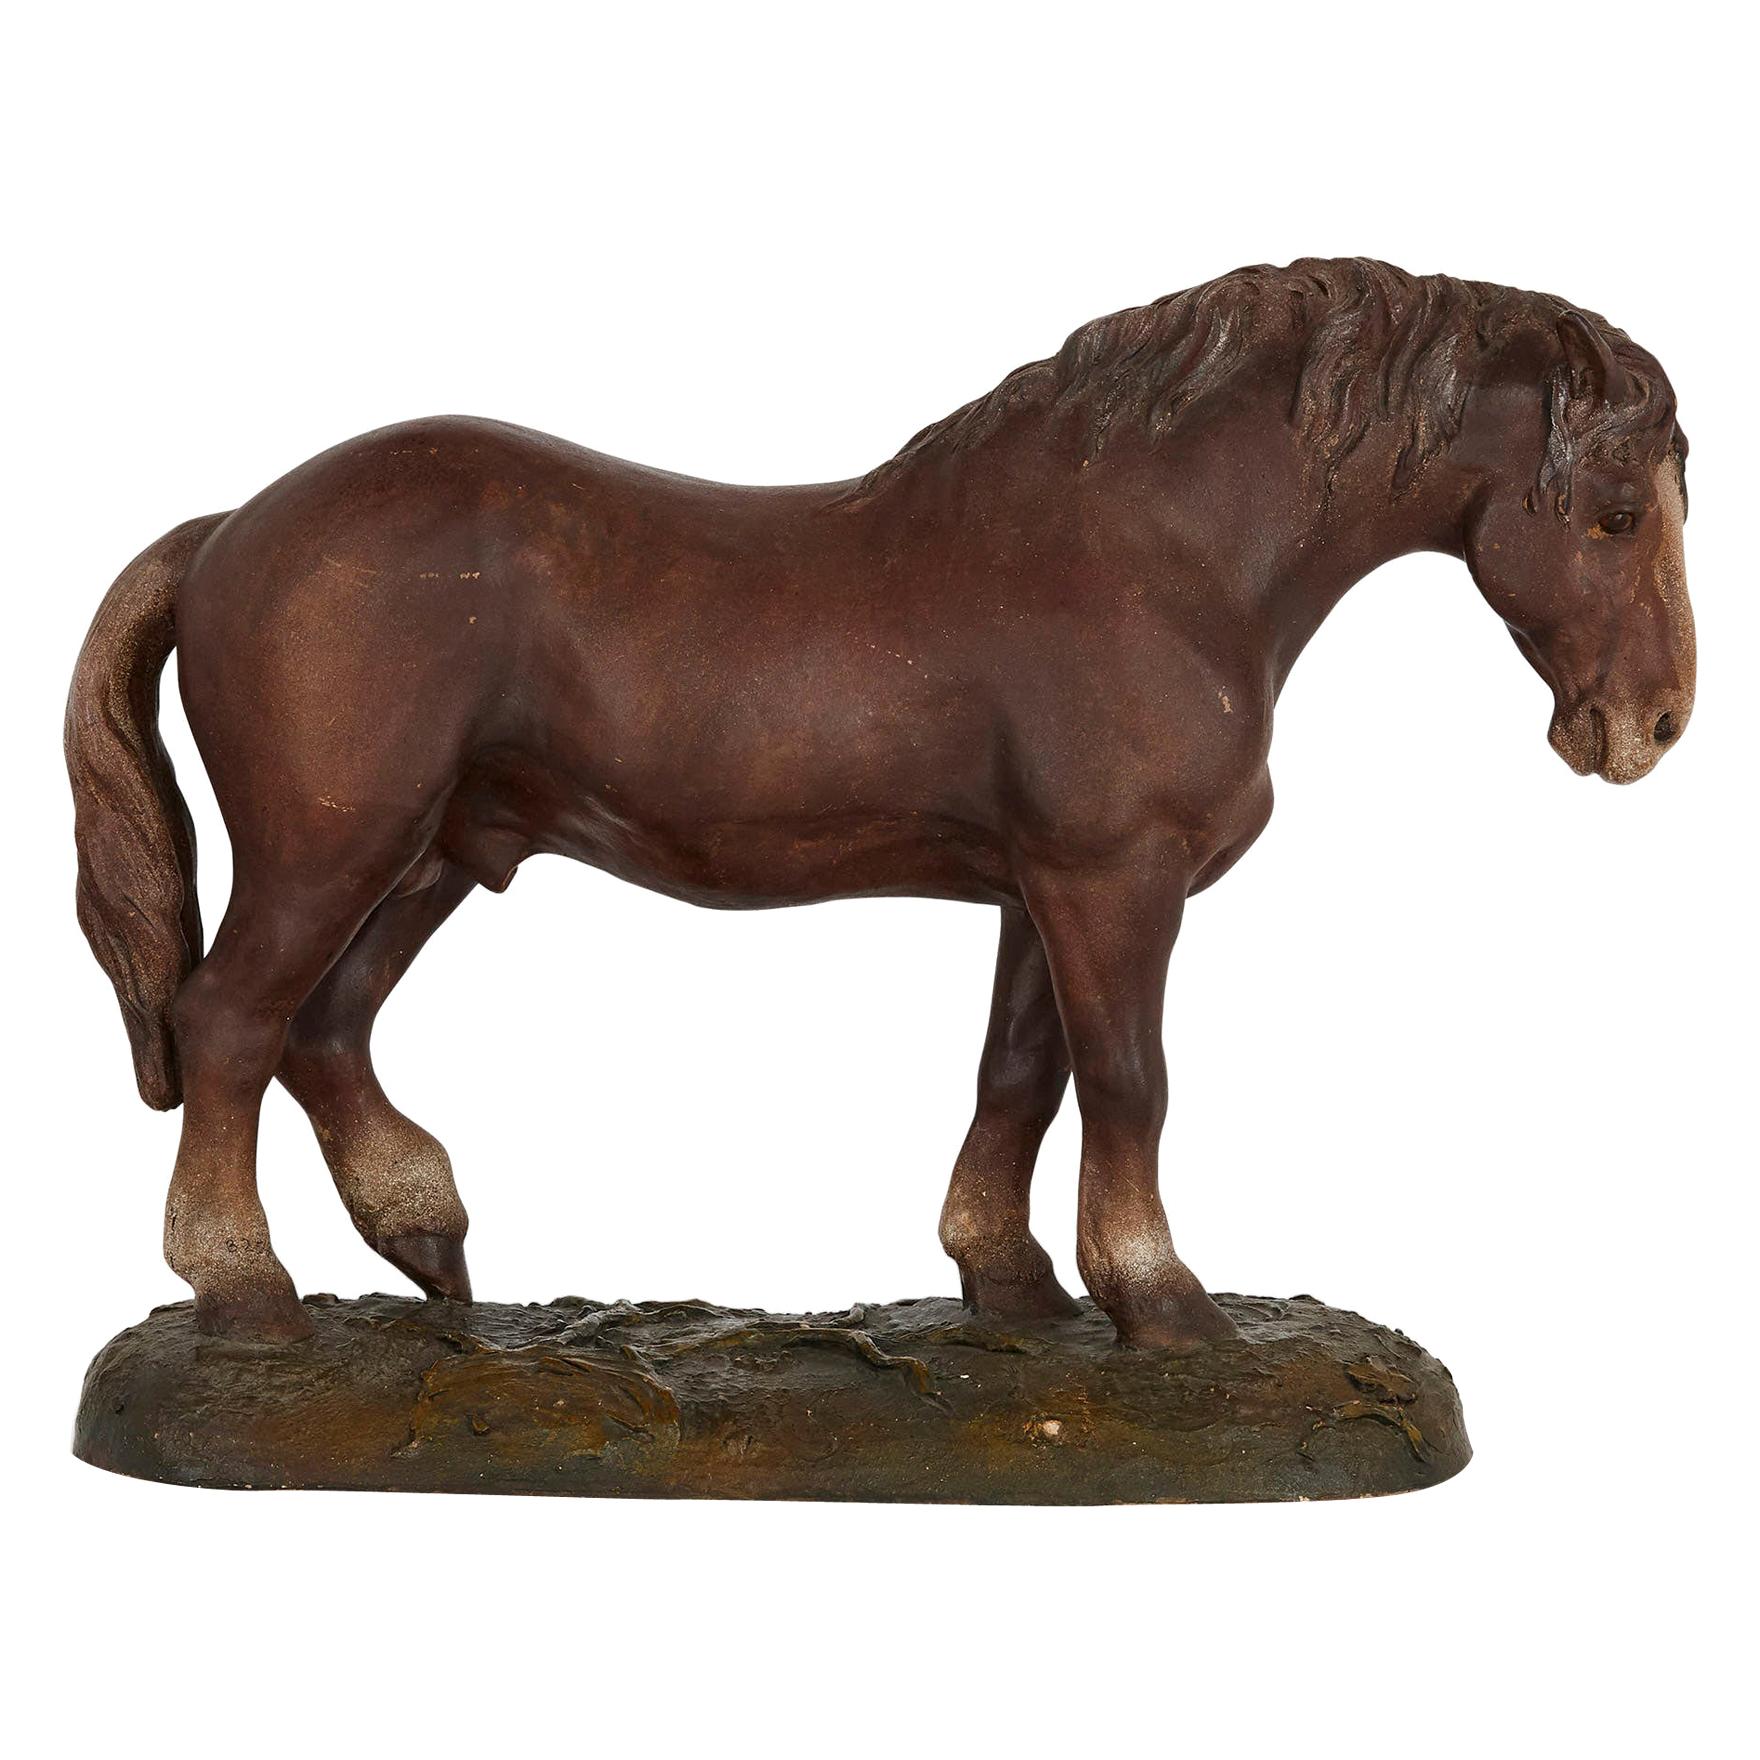 Antikes Terrakotta-Reitermodell eines Pferdes, antik